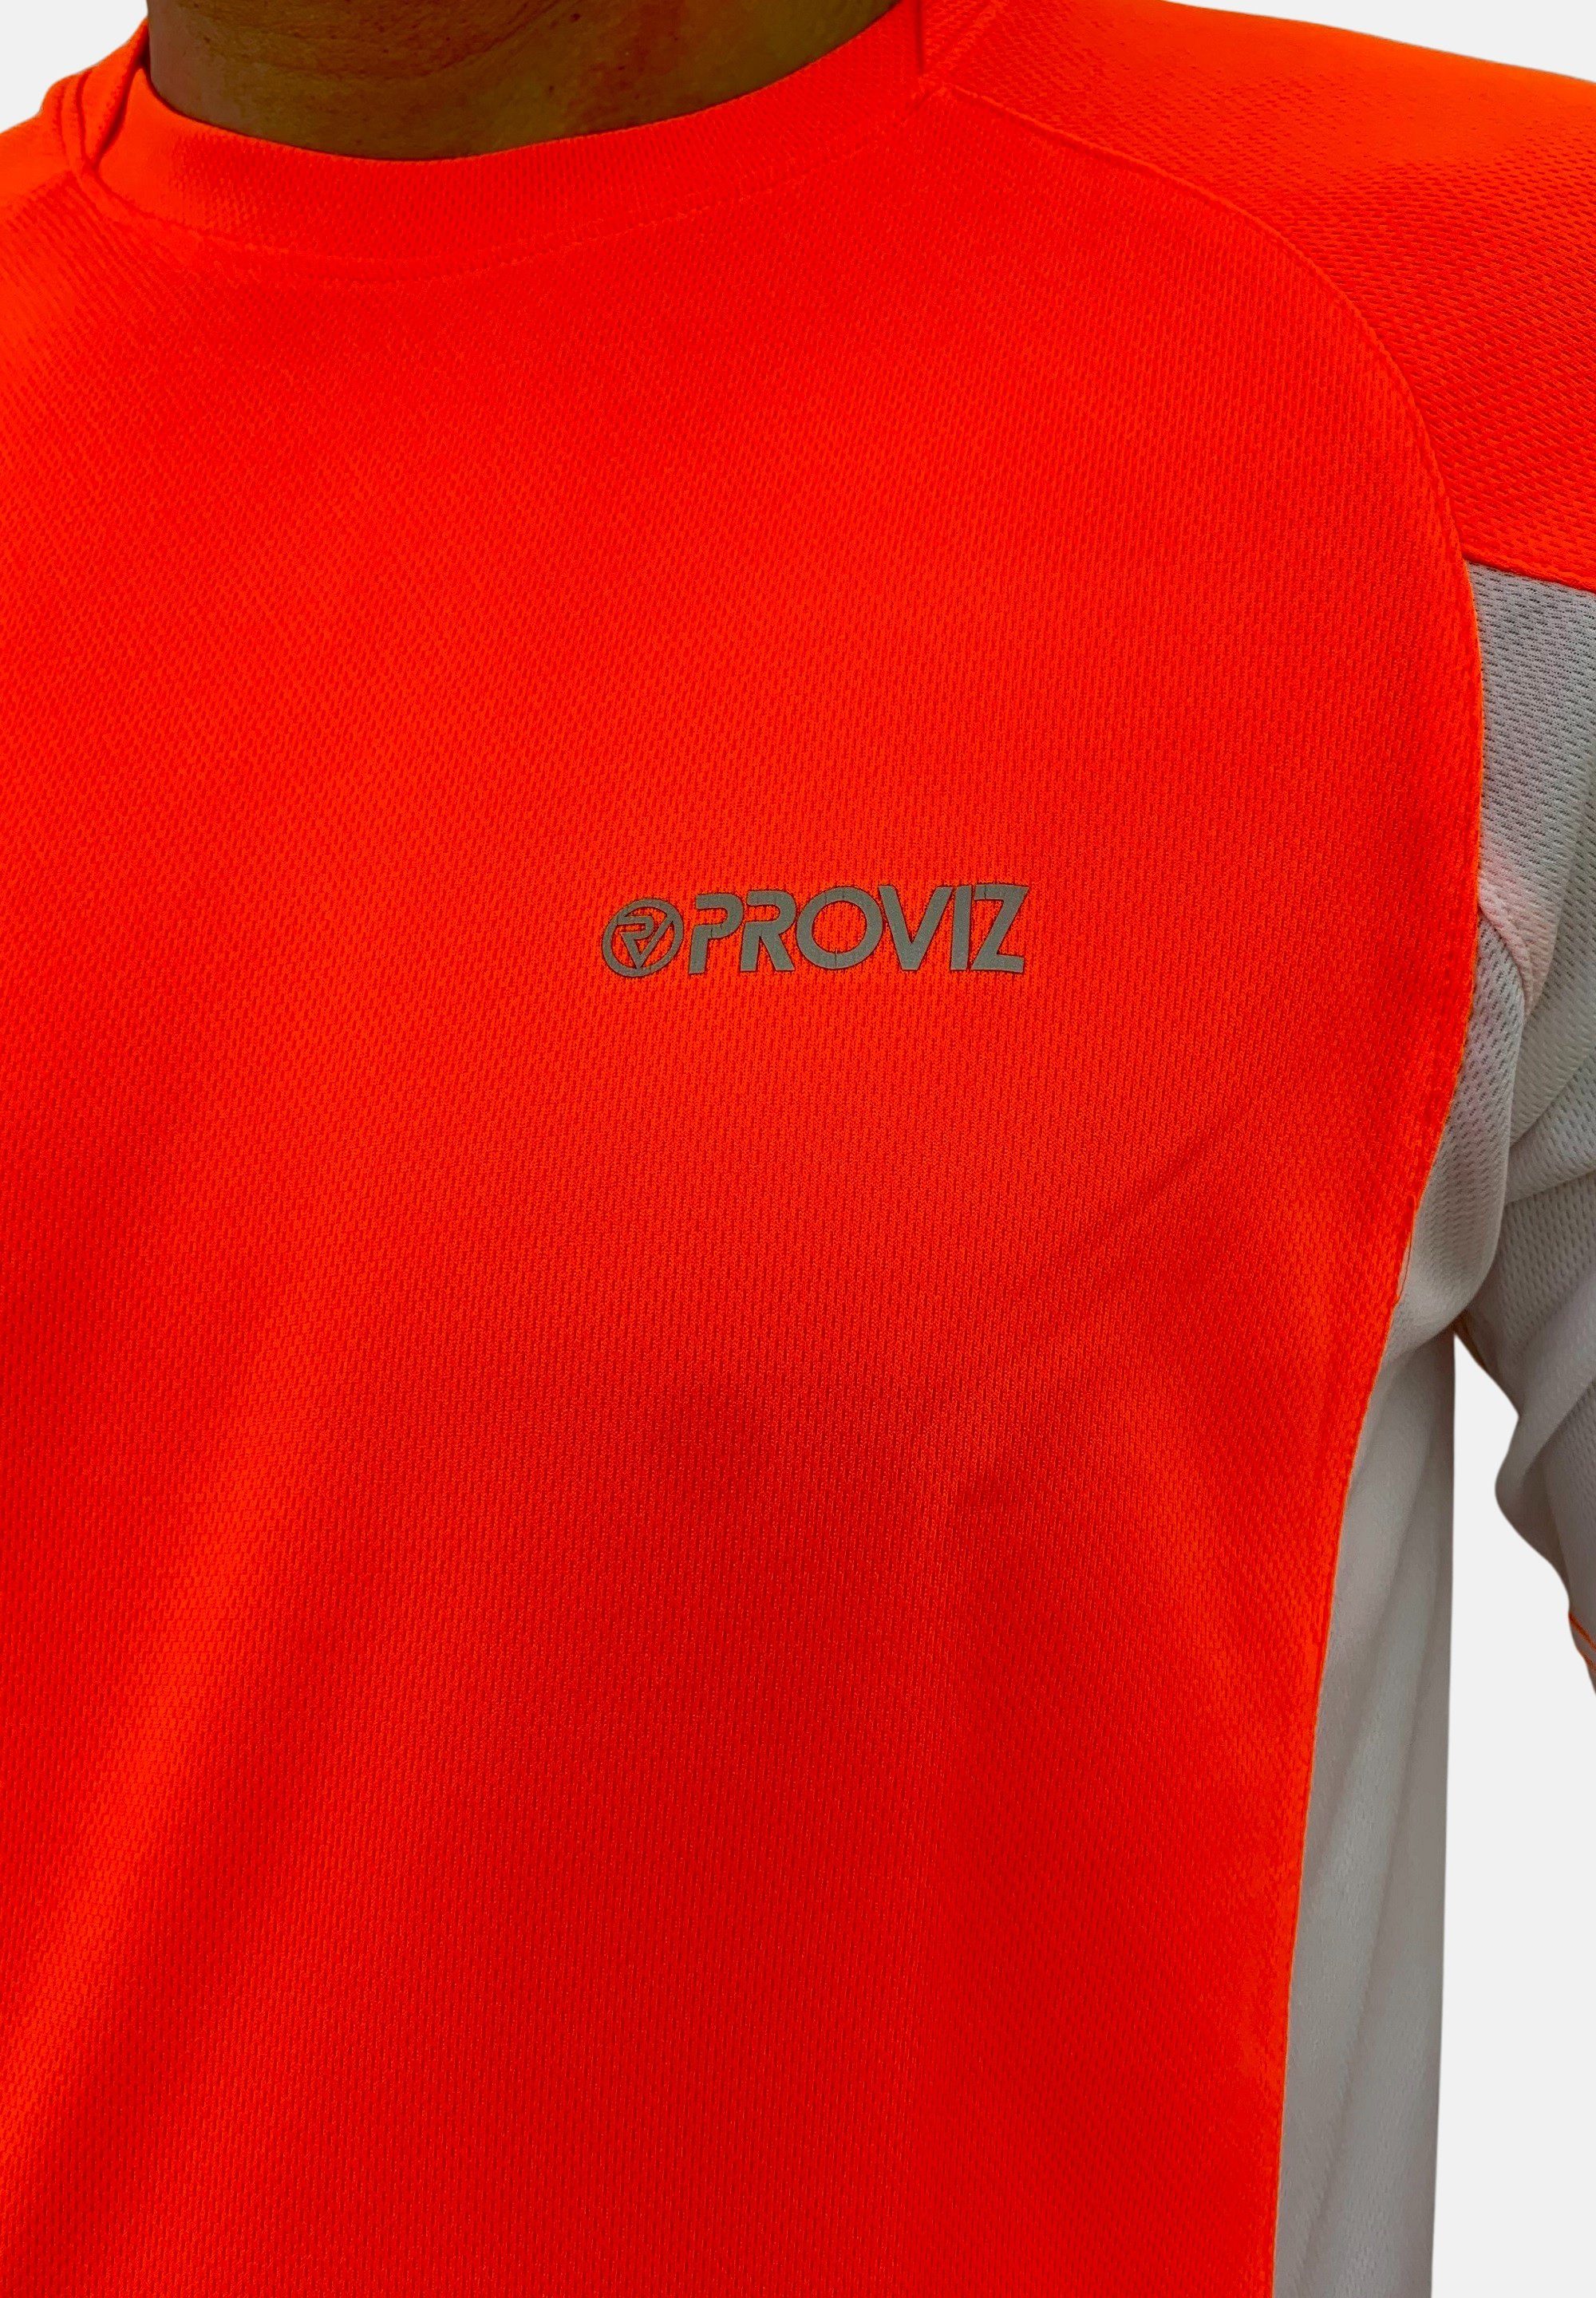 orange Ultraleicht, reflektierend Klassisch ProViz feuchtigkeitsabsorbierend, Laufshirt